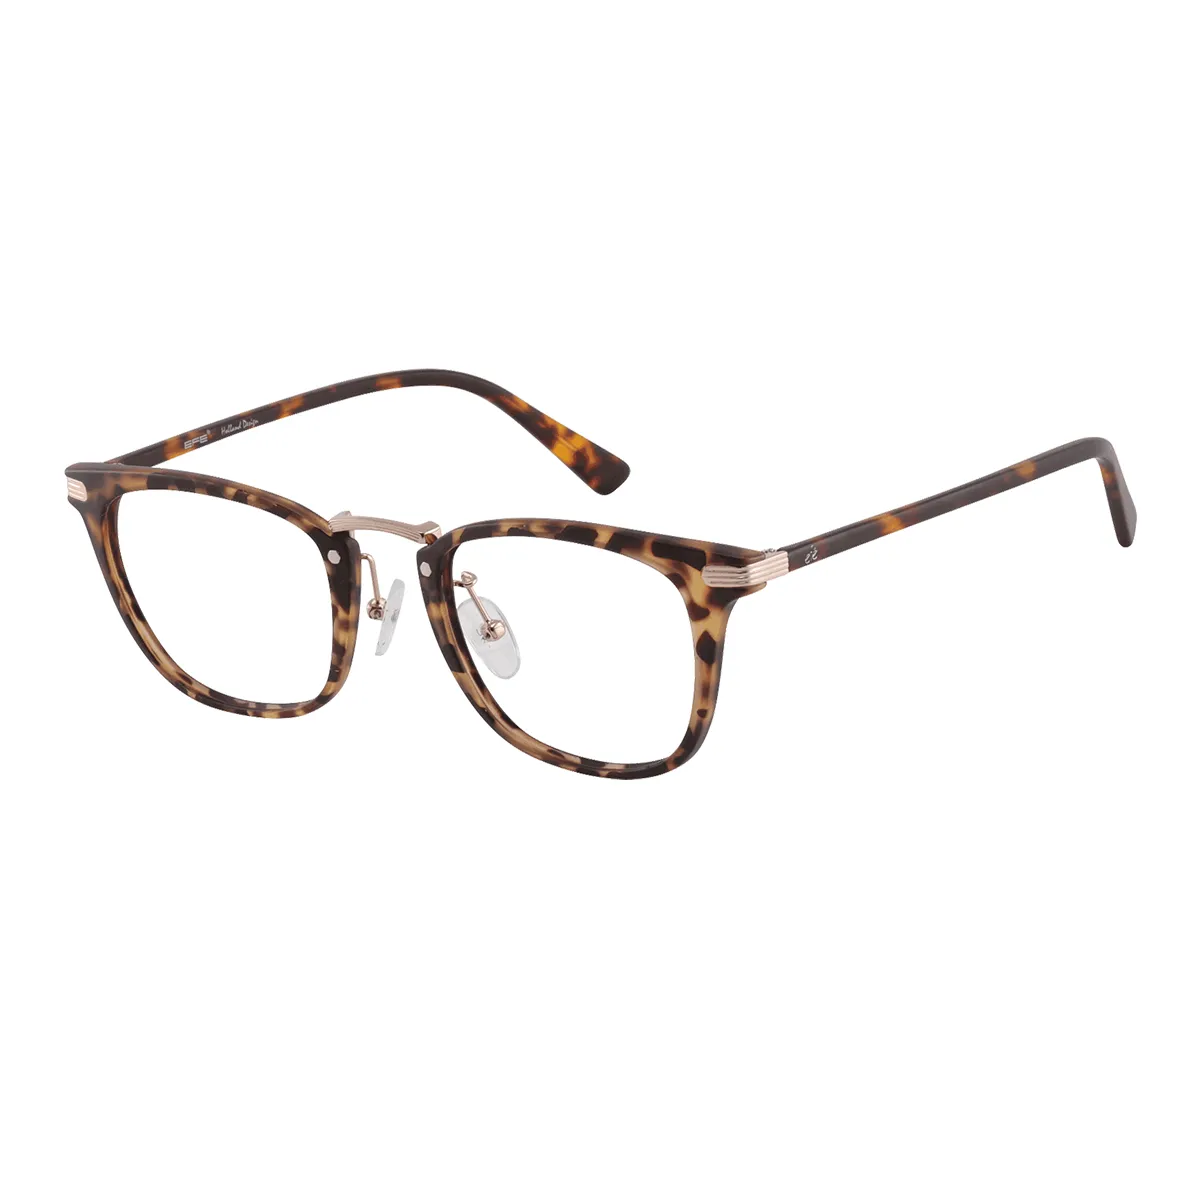 Fabian - Rectangle Tortoiseshell Glasses for Men & Women - EFE